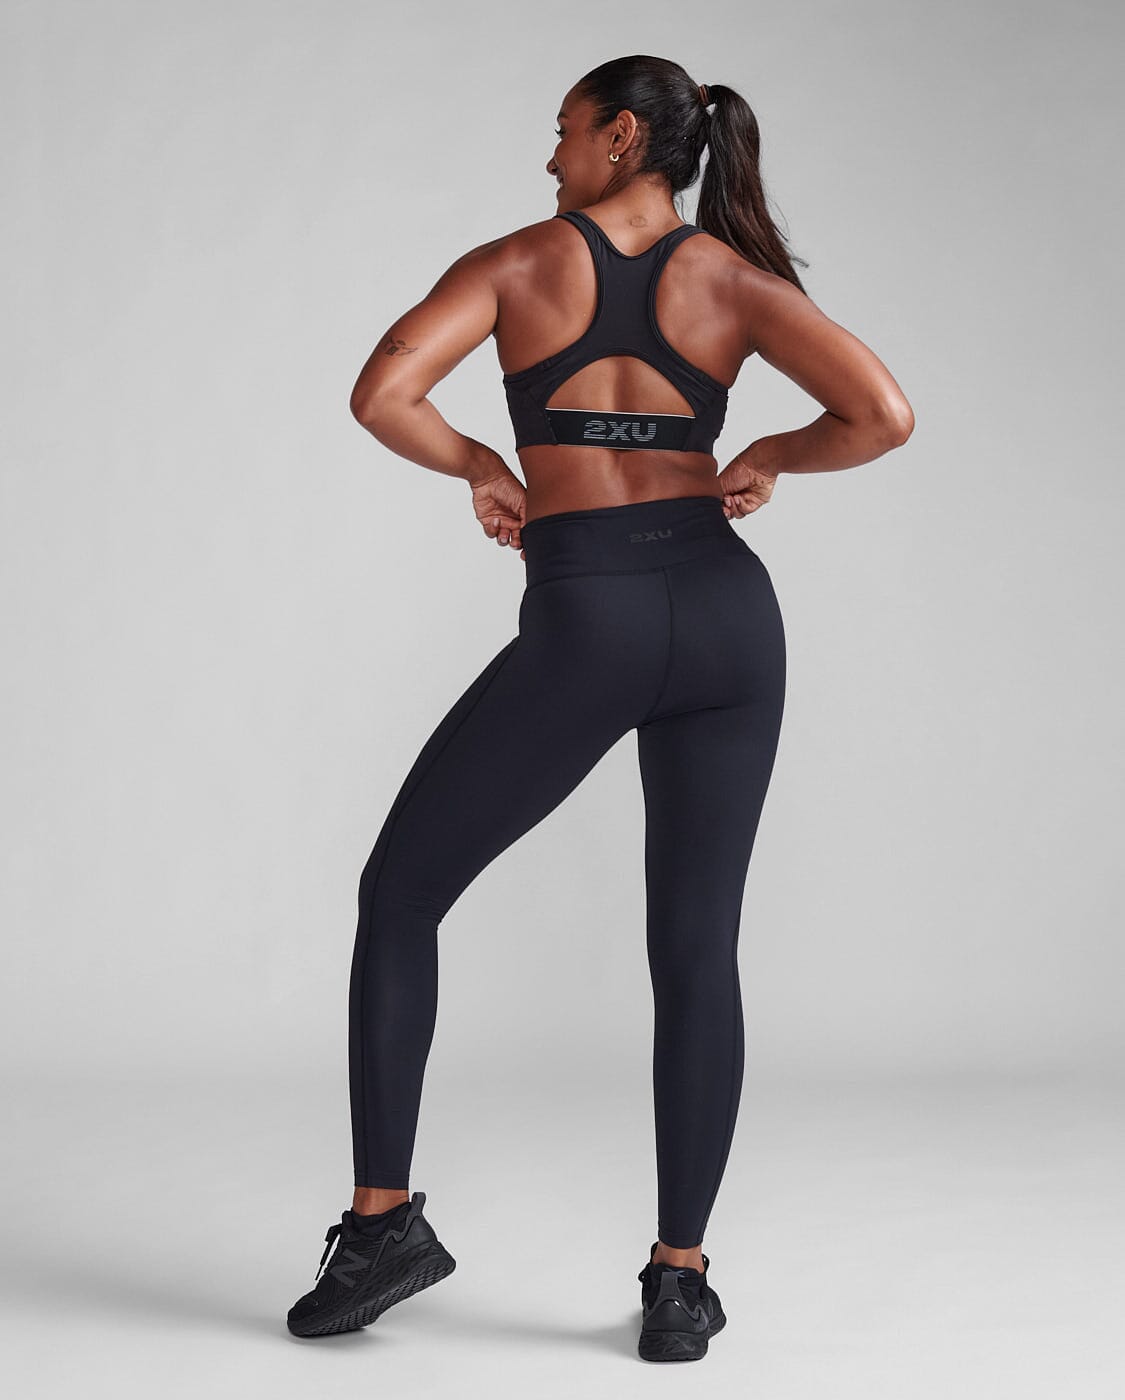 2XU Women's Form Hi-Rise Comp Tights WA7301B Black/Black XS 